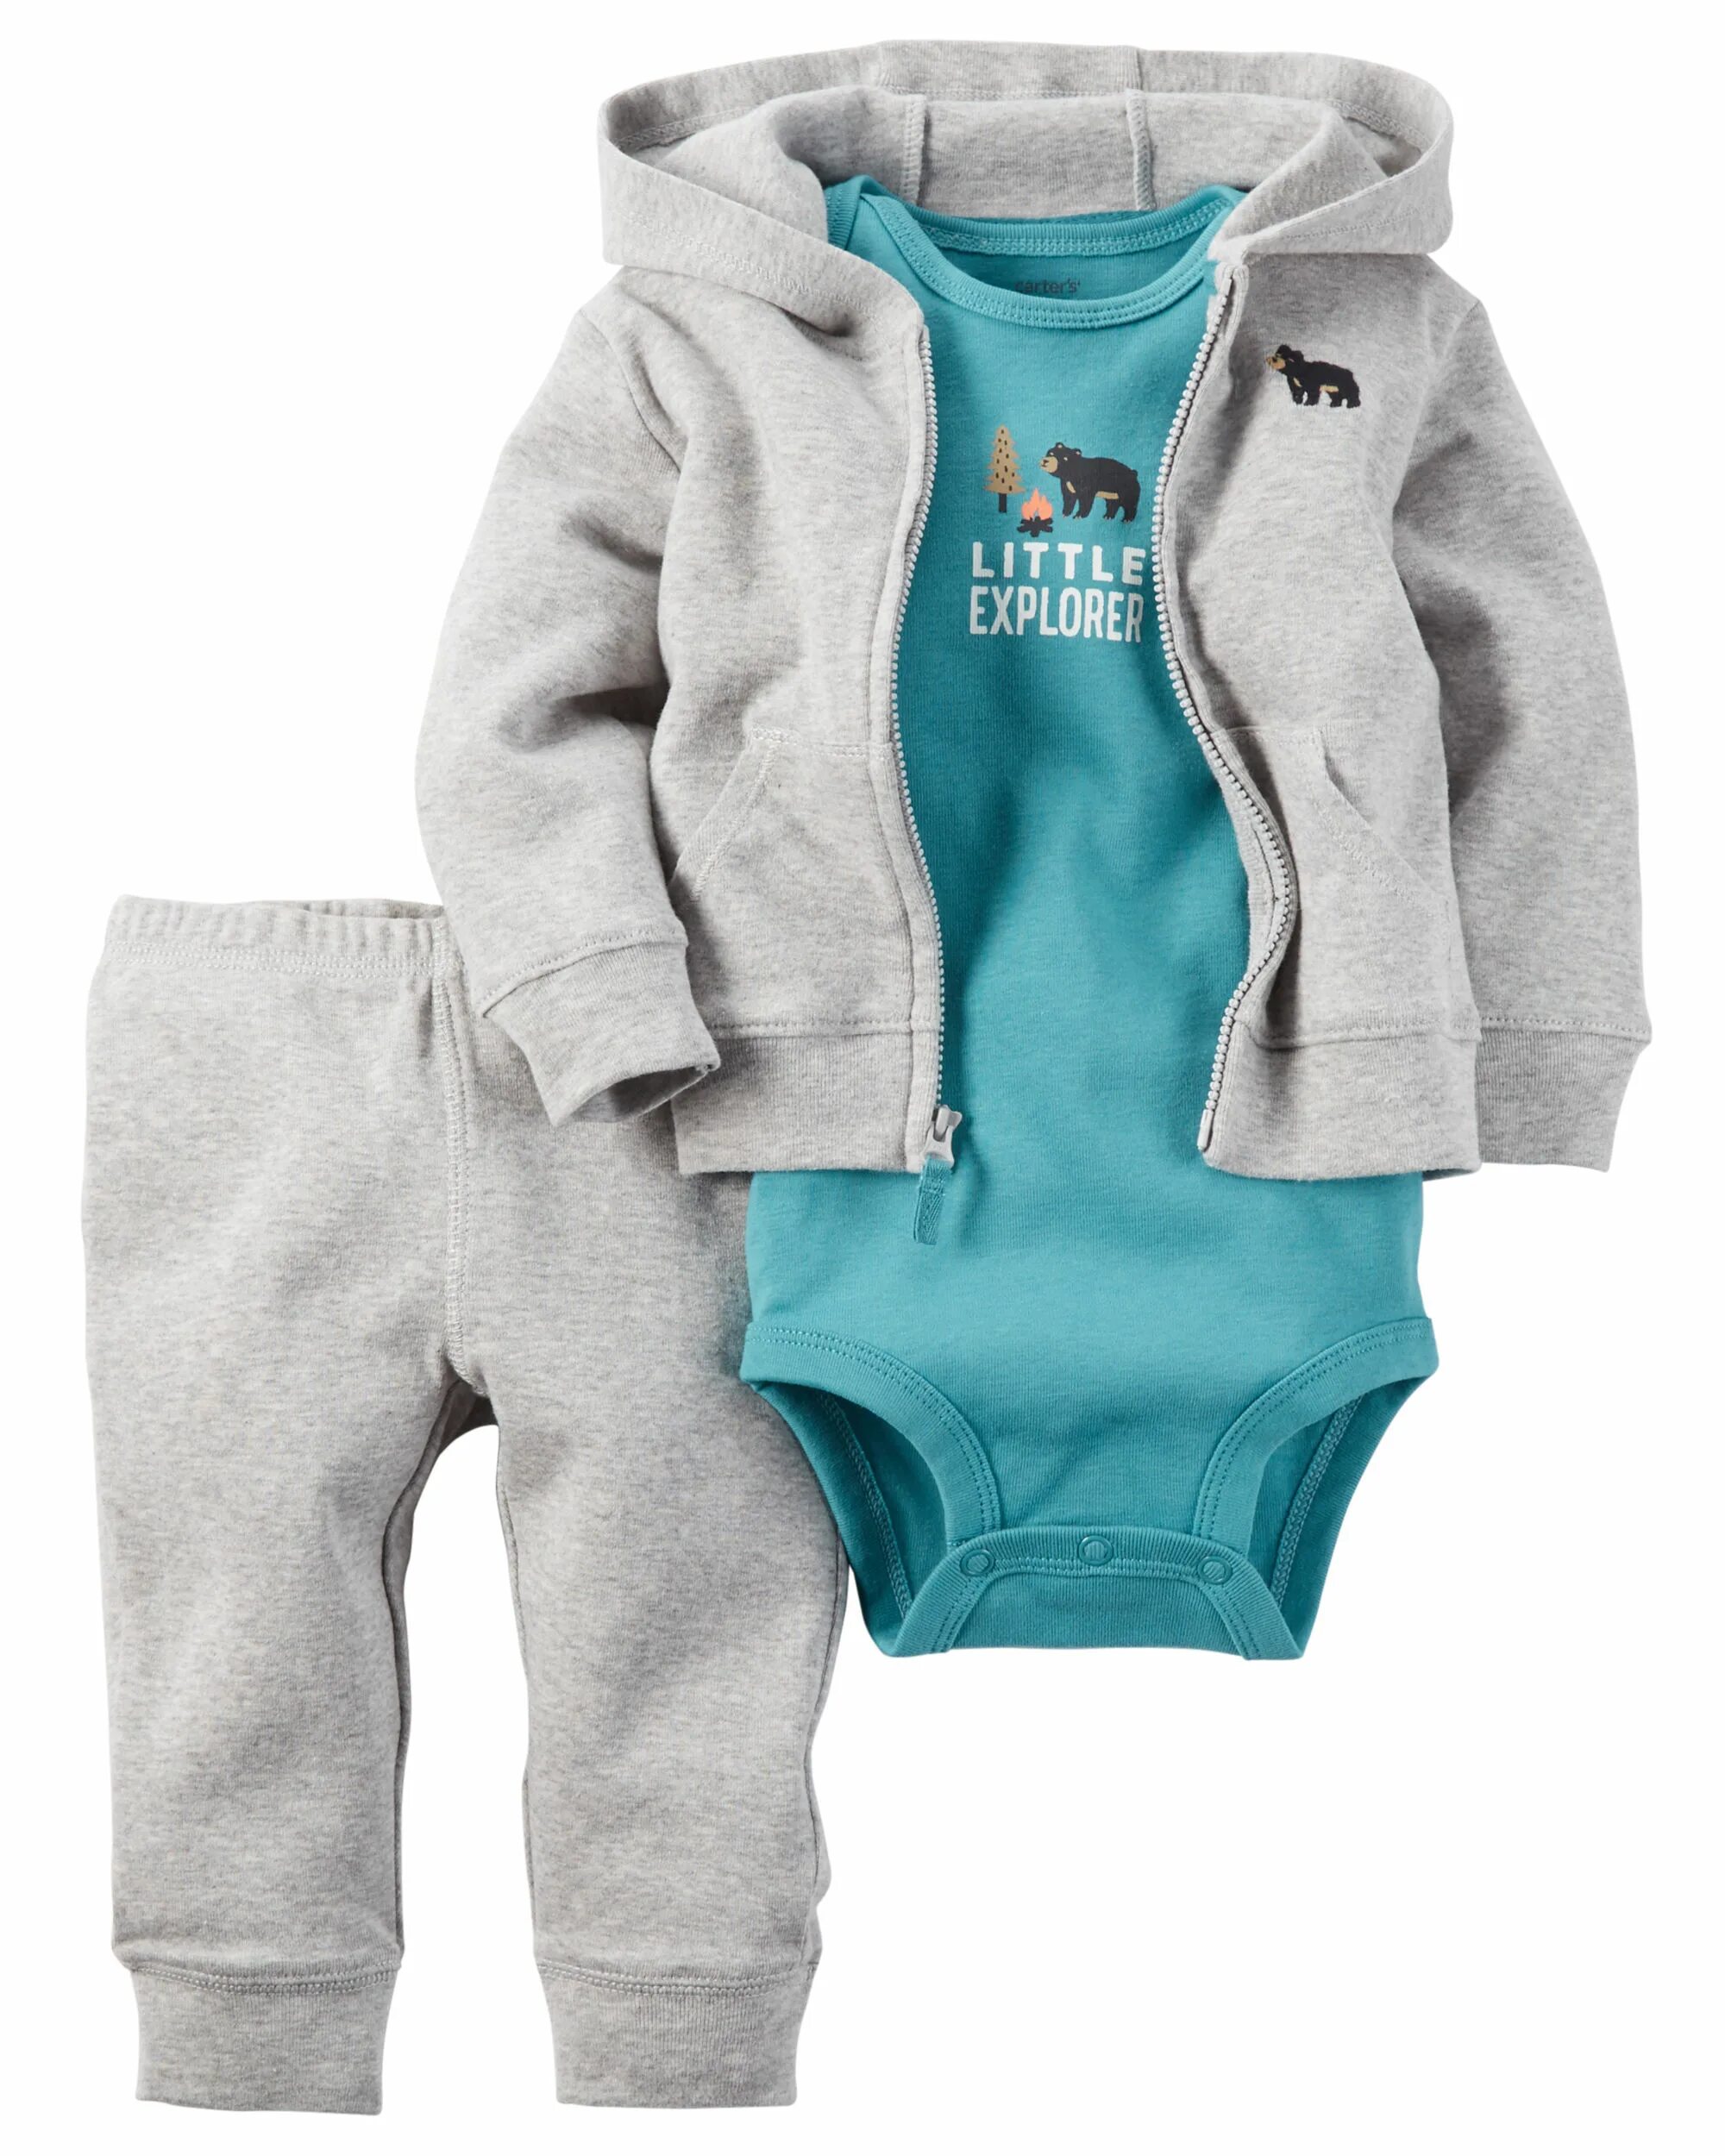 Костюм Carters 1h359510. Костюм тройка Картерс. Одежда для новорожденных мальчиков Картерс. Комплект Картерс для новорожденных мальчиков. Купить вещи на мальчика